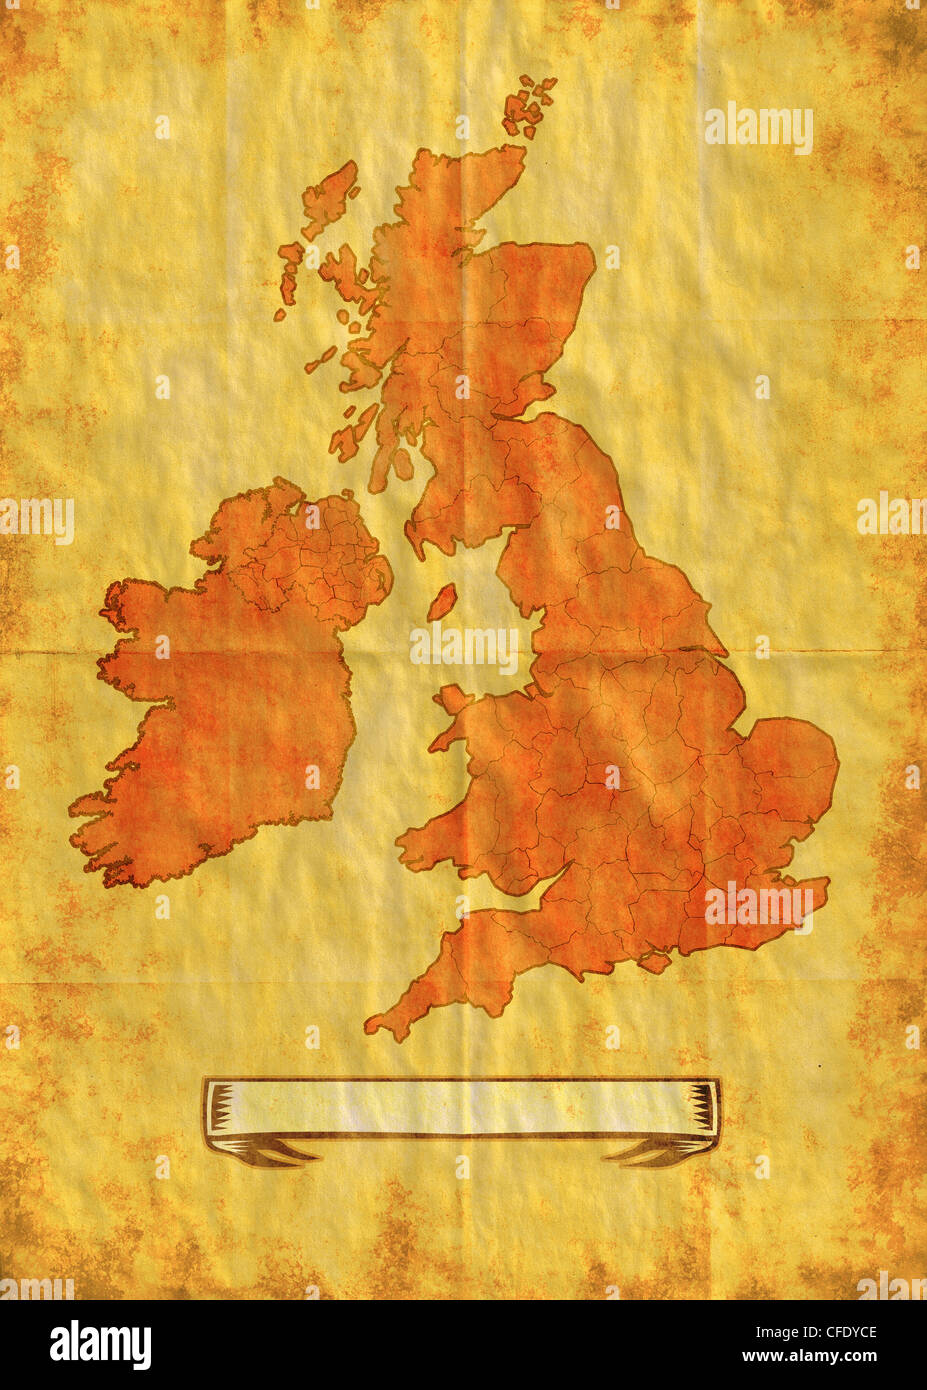 Illustration dessin d'une carte des îles Britanniques montrant l'Irlande du Nord, Pays de Galles, Ecosse, Irlande et Angleterre avec grunge Banque D'Images